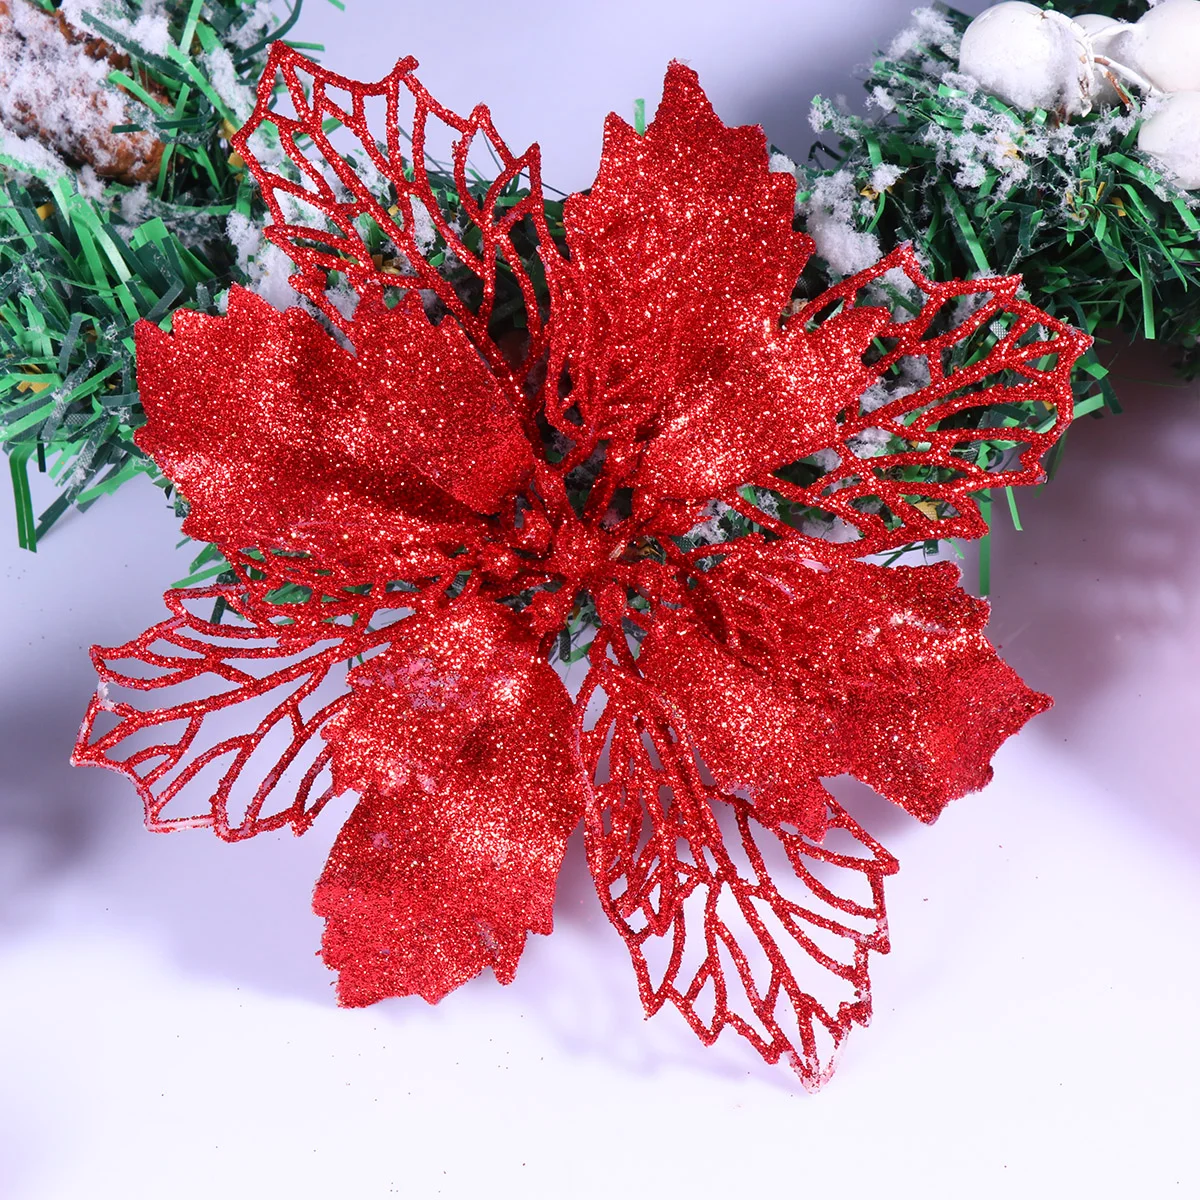 

12 шт. красные блестящие пуансеттийские цветы, 16x16 см Рождественская елка, цветы с блестками, пуансеттия, набор цветов для рождественской елки, венок на дерево